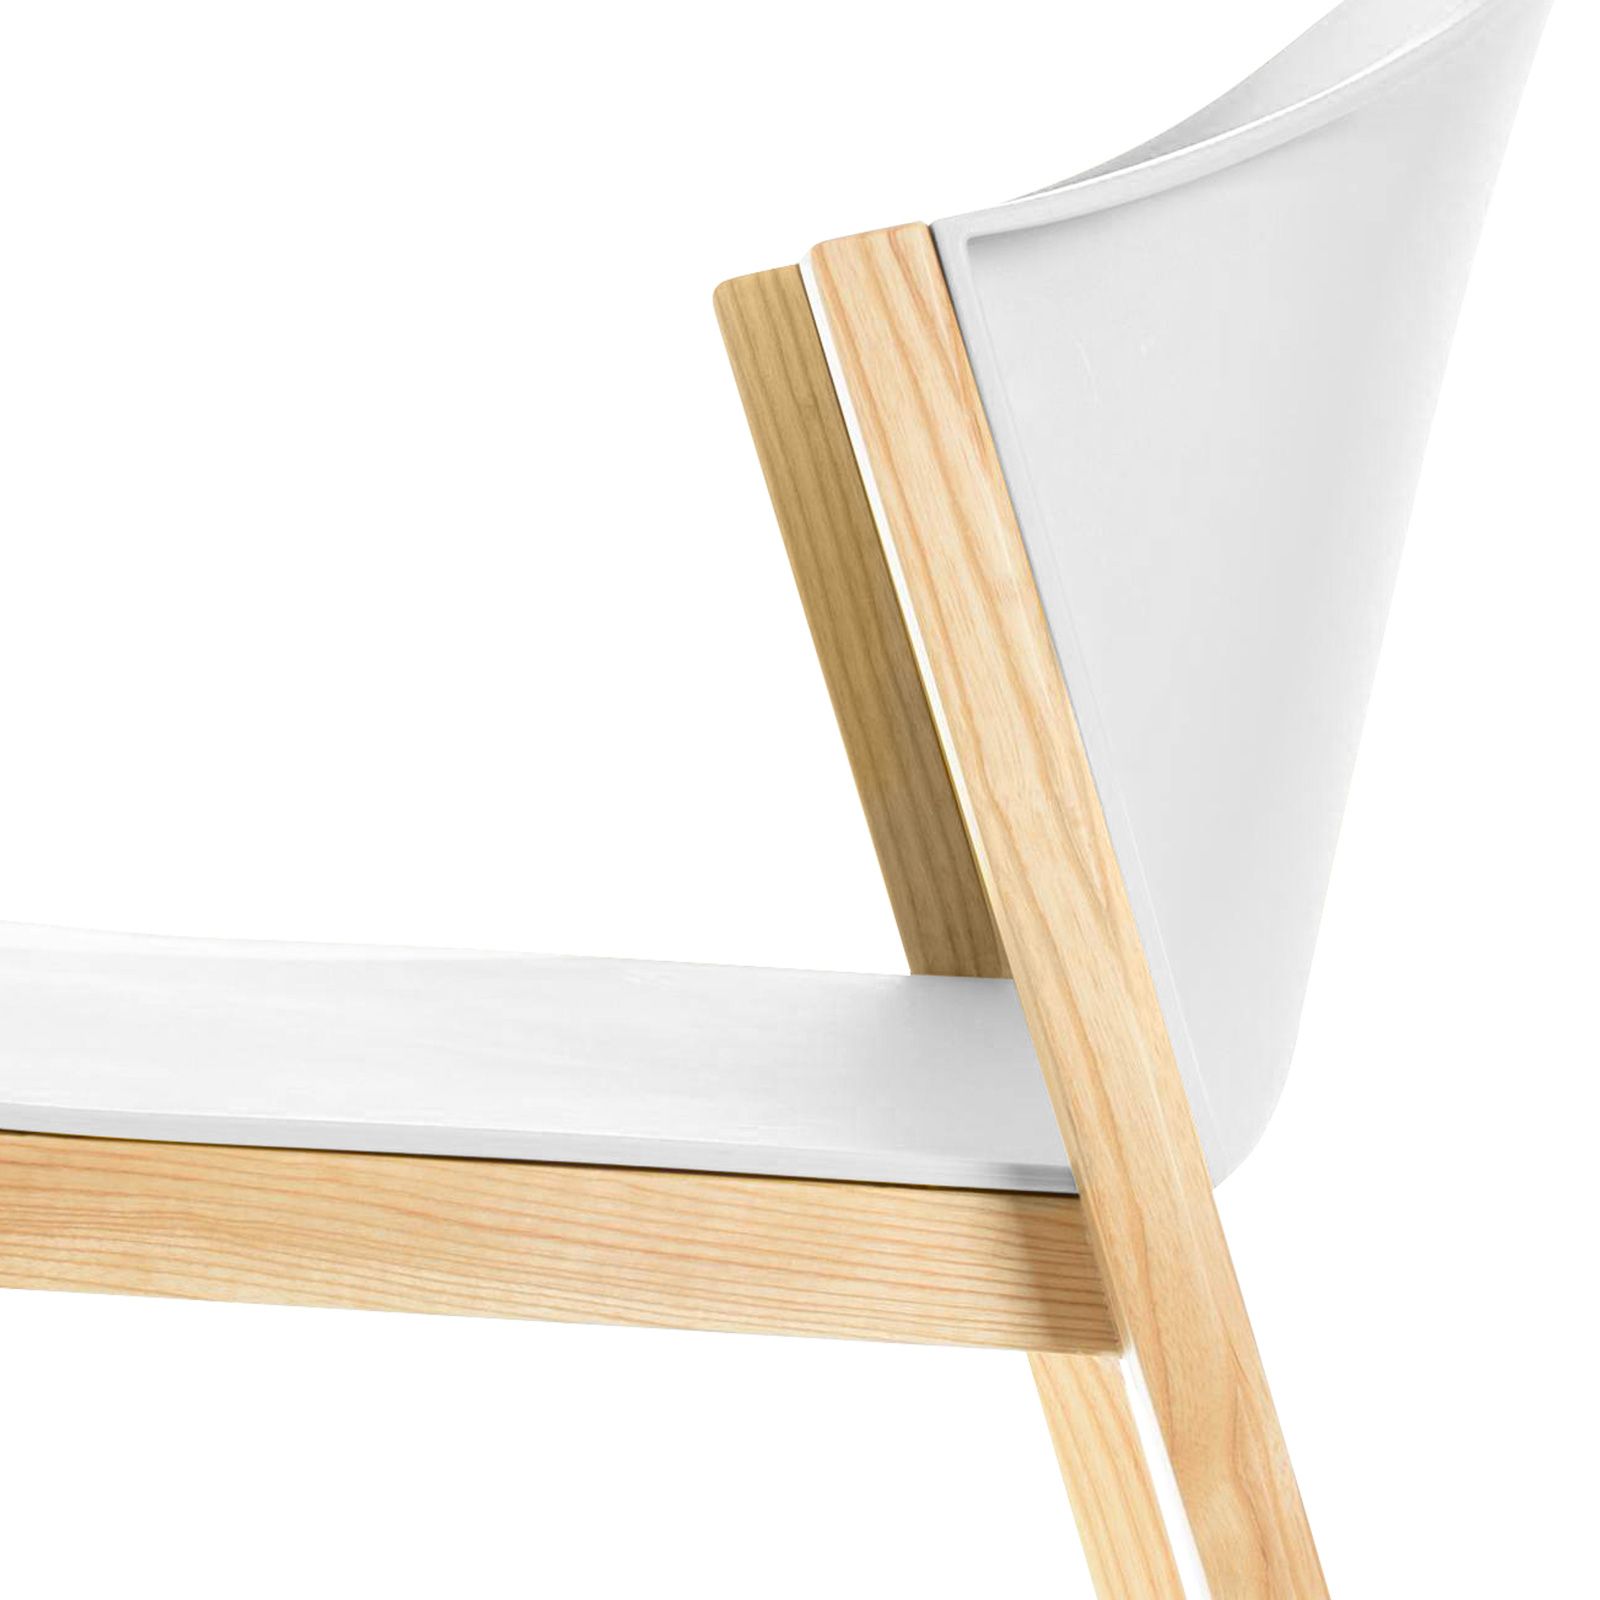 JUANSAN | Silla con estructura de madera de haya y policarbonato (61 x 58 x 78,5 cm)